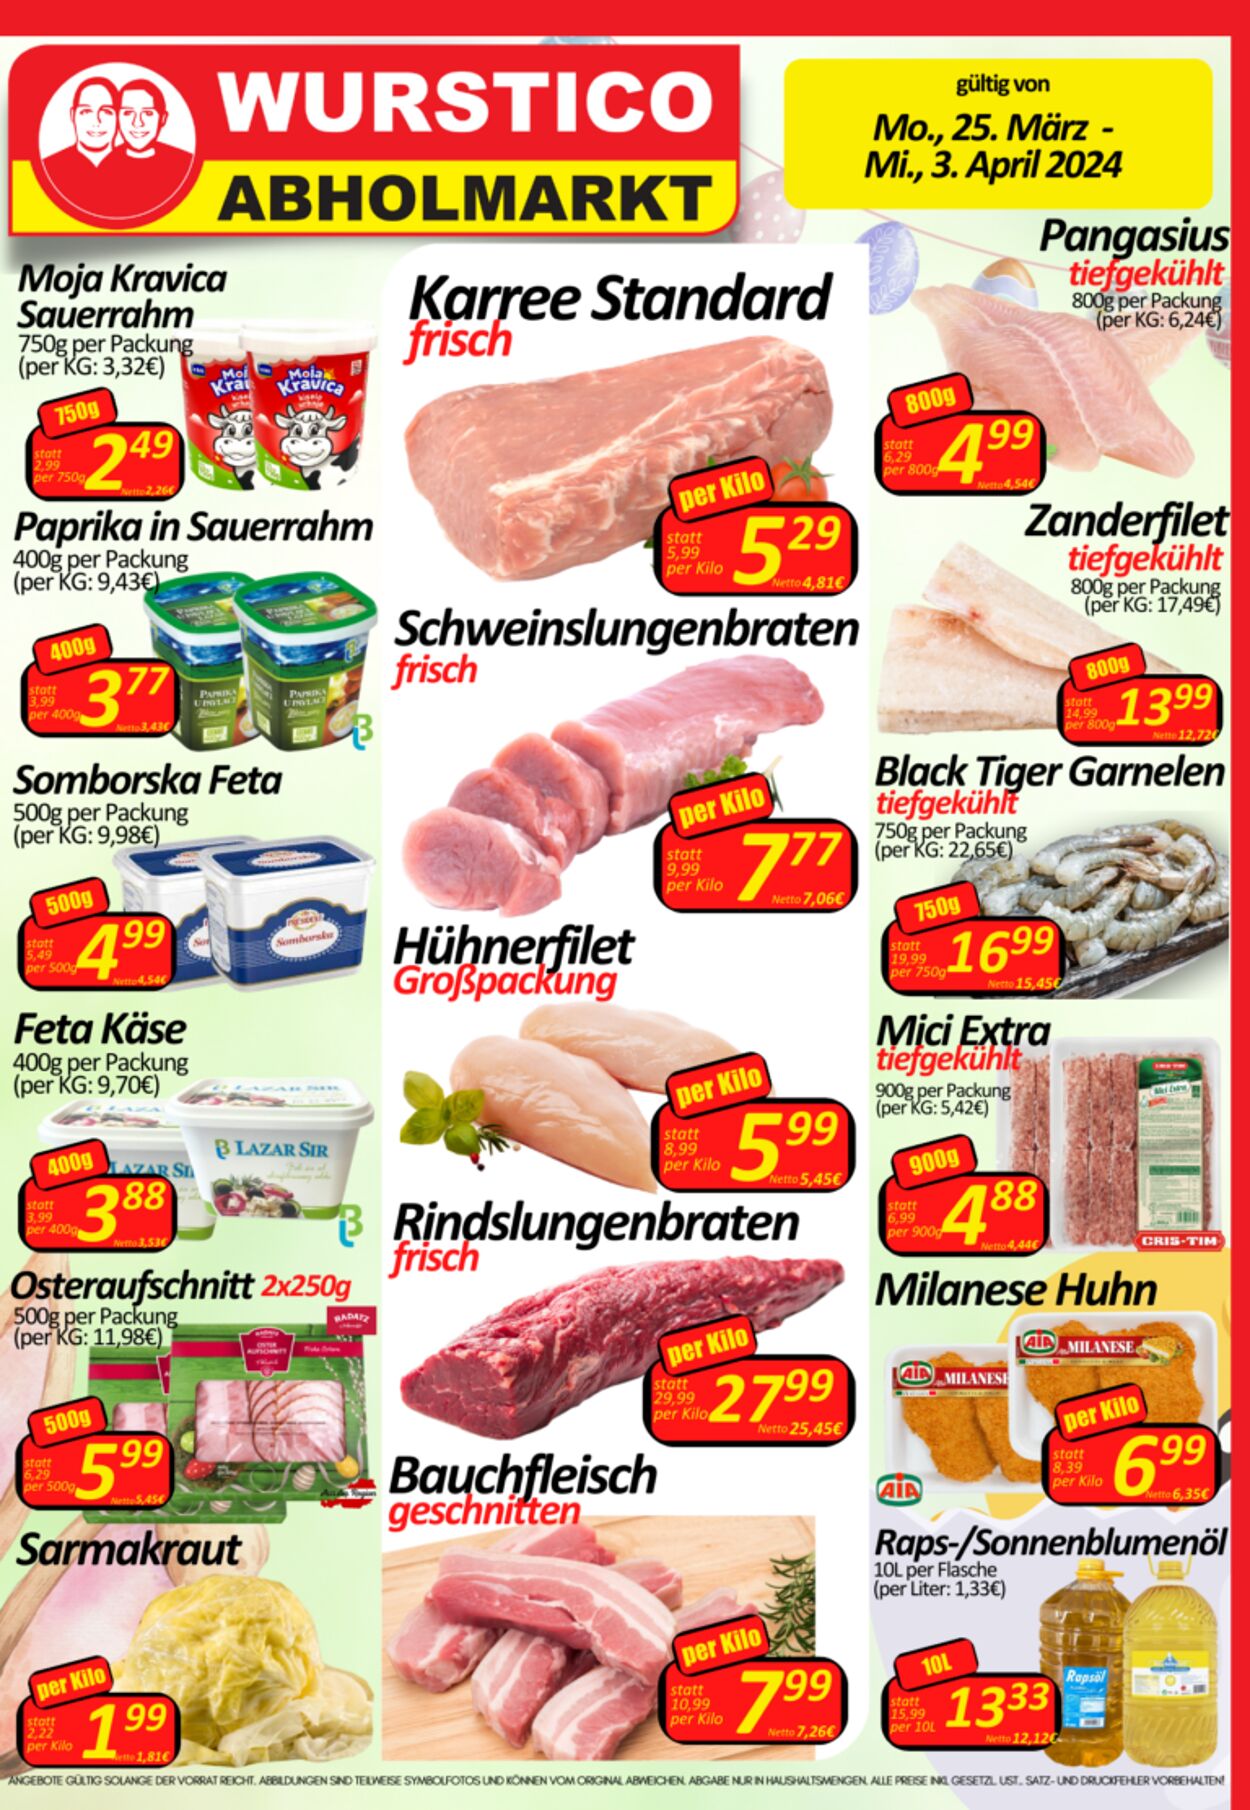 Prospekt Wurstico - Wurstico Abholmarkt – Wurst, Fleischwaren und mehr zu FabrikspreisenAktuelle Angebote bei Wurstico 25 Mär, 2024 - 3 Apr, 2024